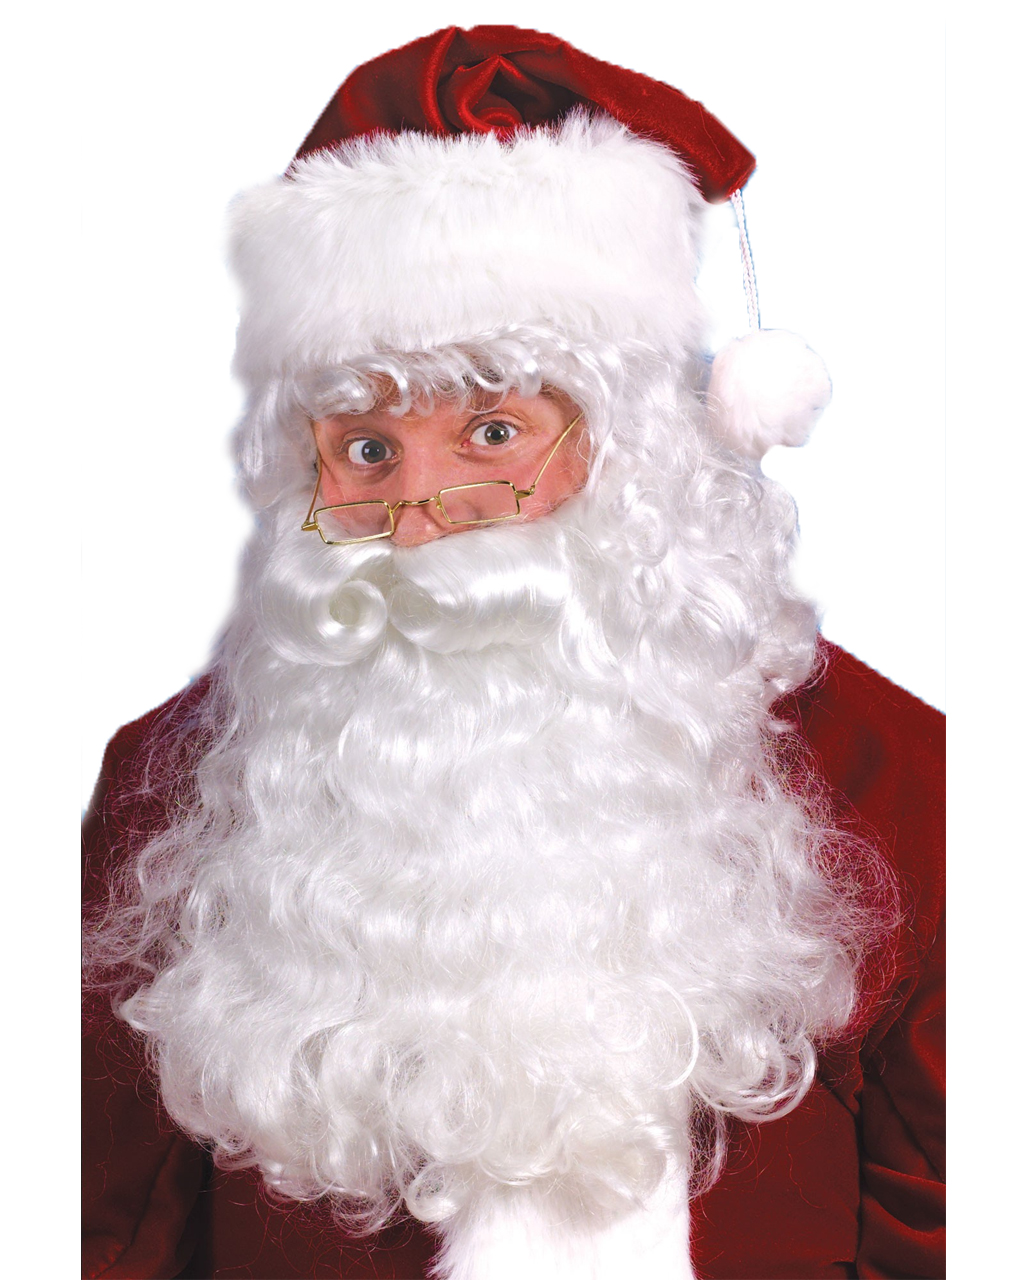 nikolaus peruecke mit bart und augenbrauen santa claus peruecke mit bart weihnachtsmann kostueme und verkleidung 19824 1